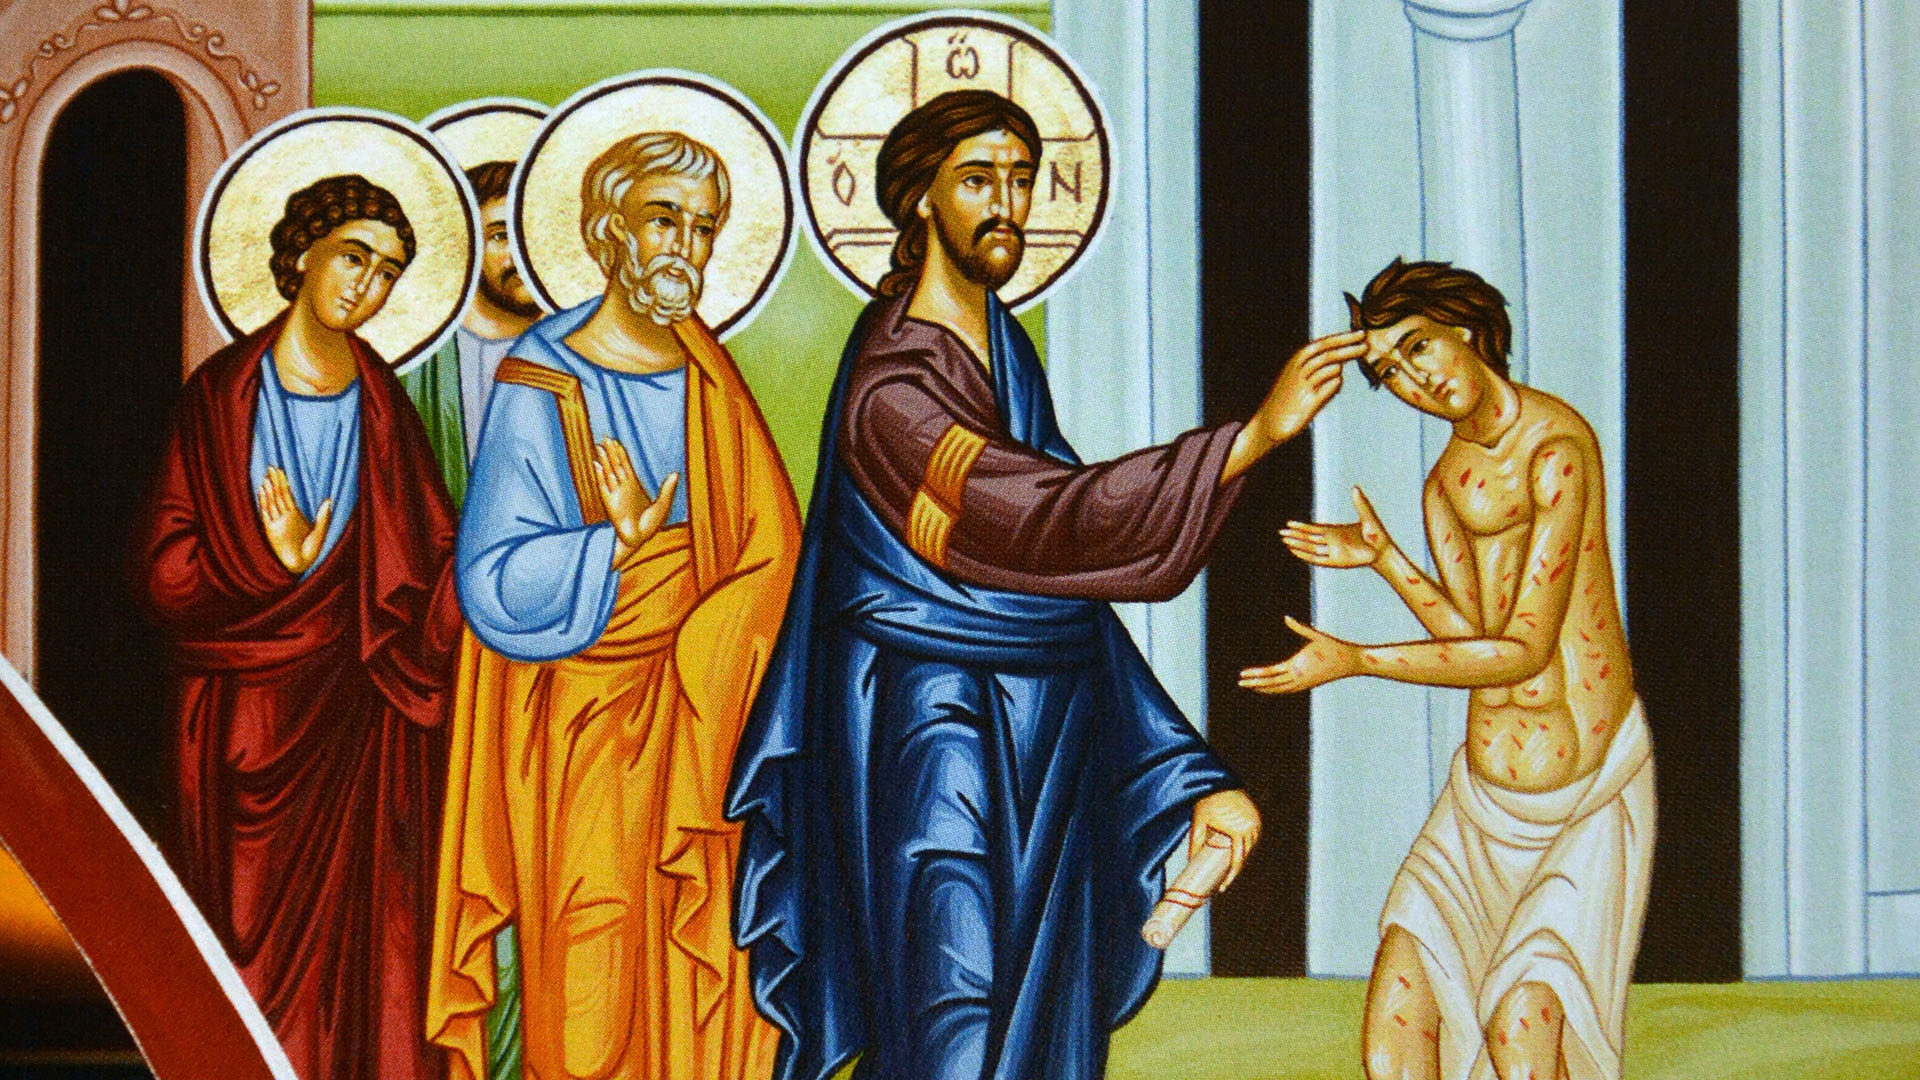 Saisi de compassion, Jésus étendit la main,
le toucha et lui dit :
"Je le veux, sois purifié" | © Flickr/Ted/CC BY-NC 2.0